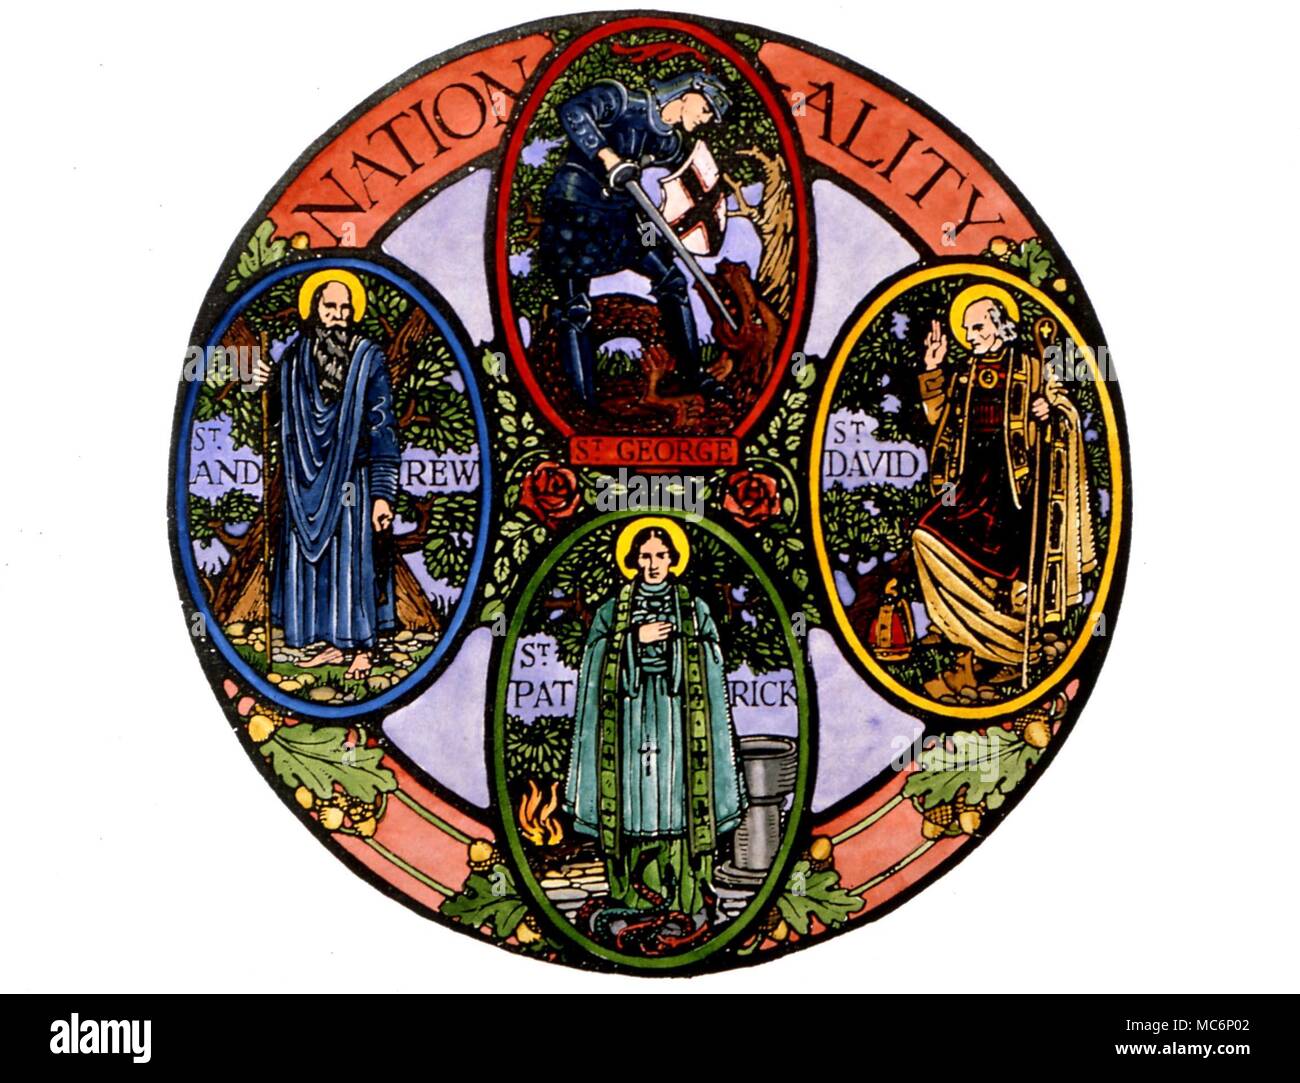 Los santos patronos de las Islas Británicas,David de Gales, Patricio de Irlanda y George de Inglaterra. Grabado de madera c.1914 Foto de stock